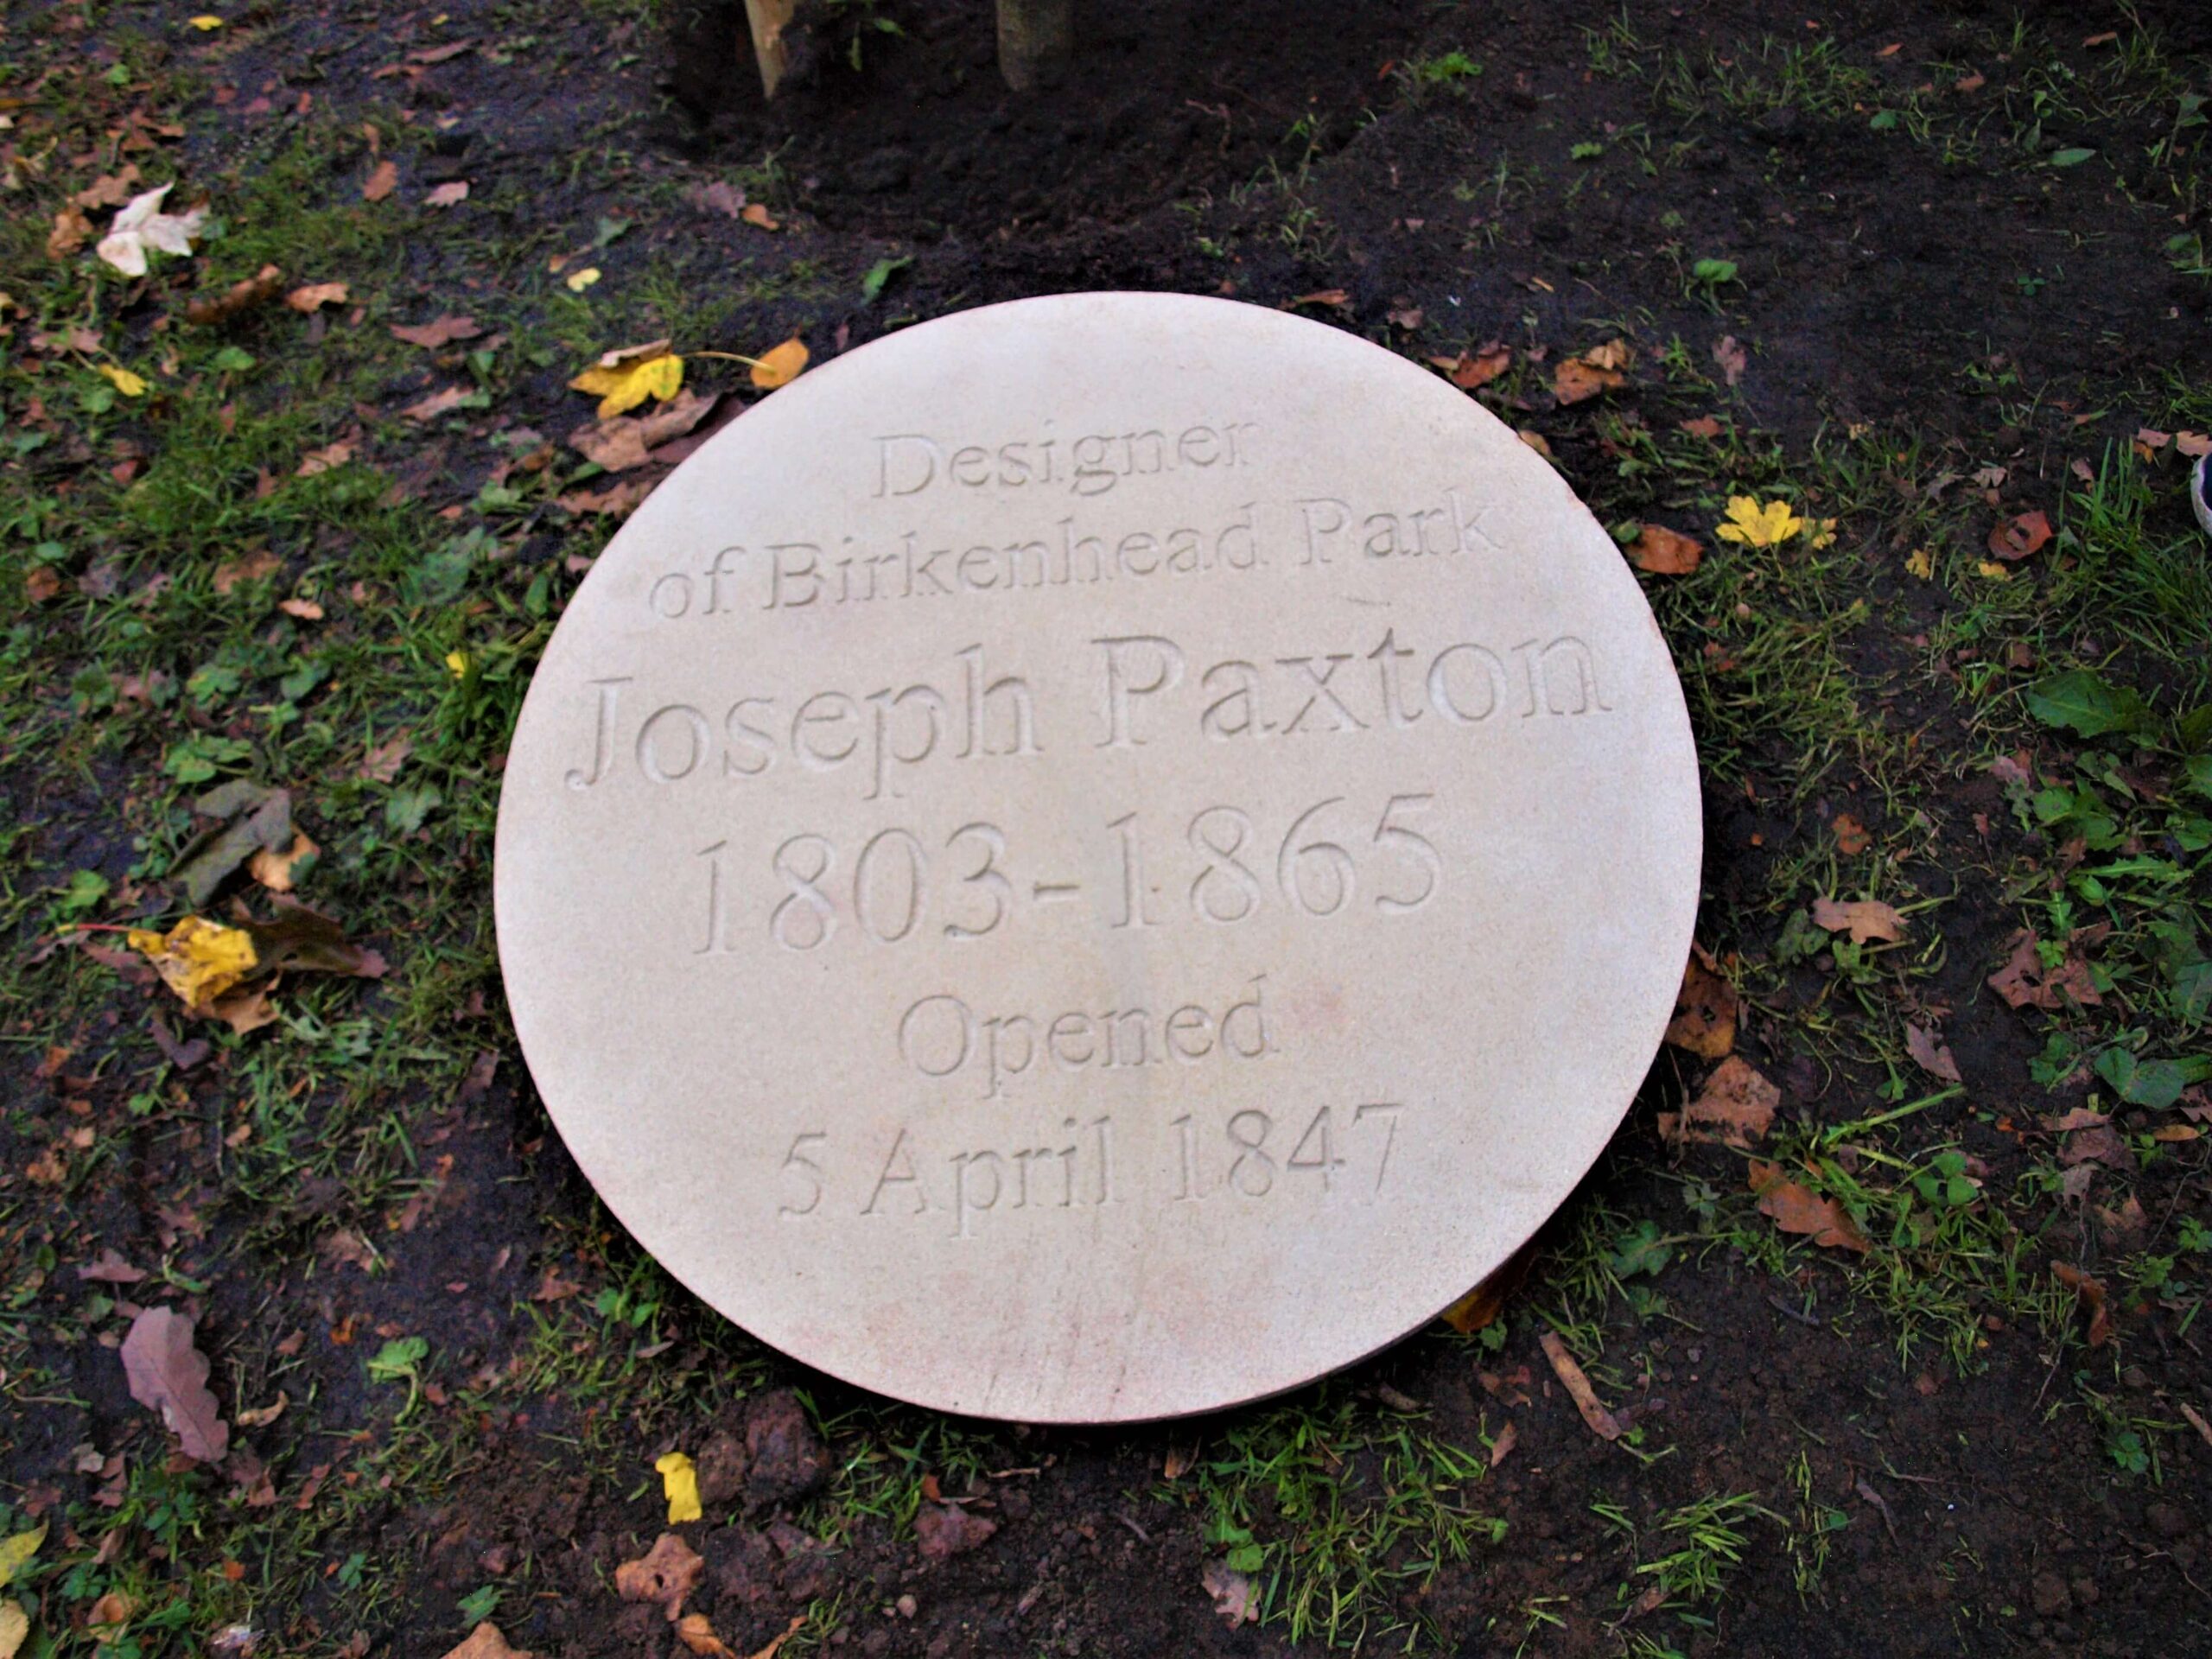 Joseph Paxton's stone plaque in Birkenhead Park